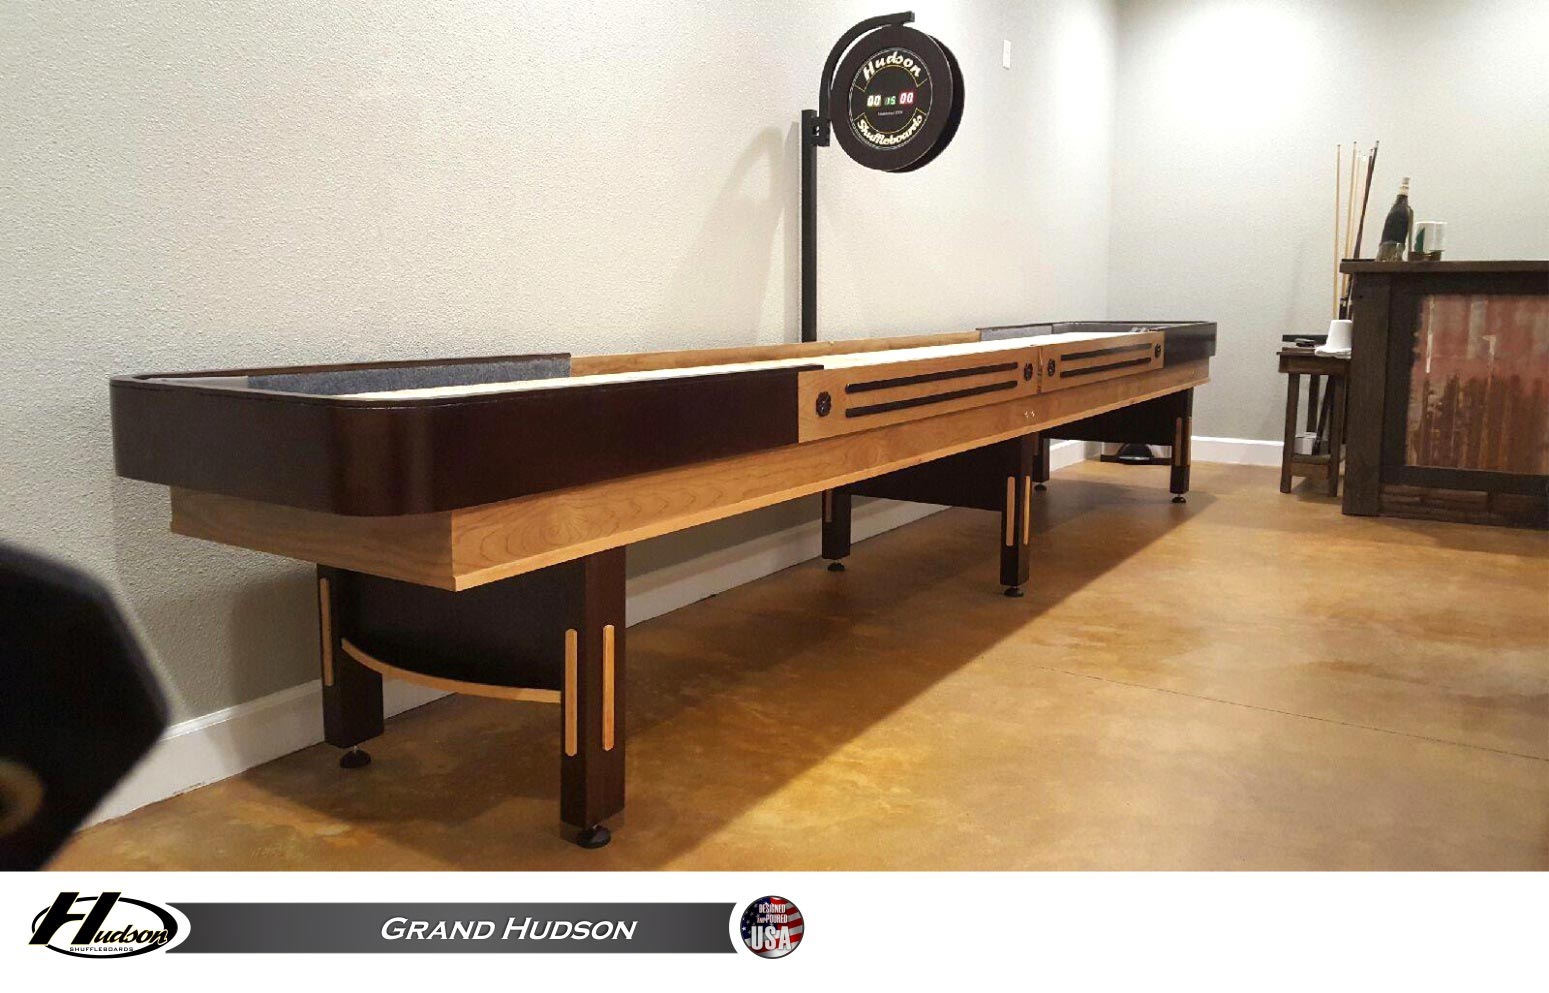 12 foot Grand Hudson Shuffleboard